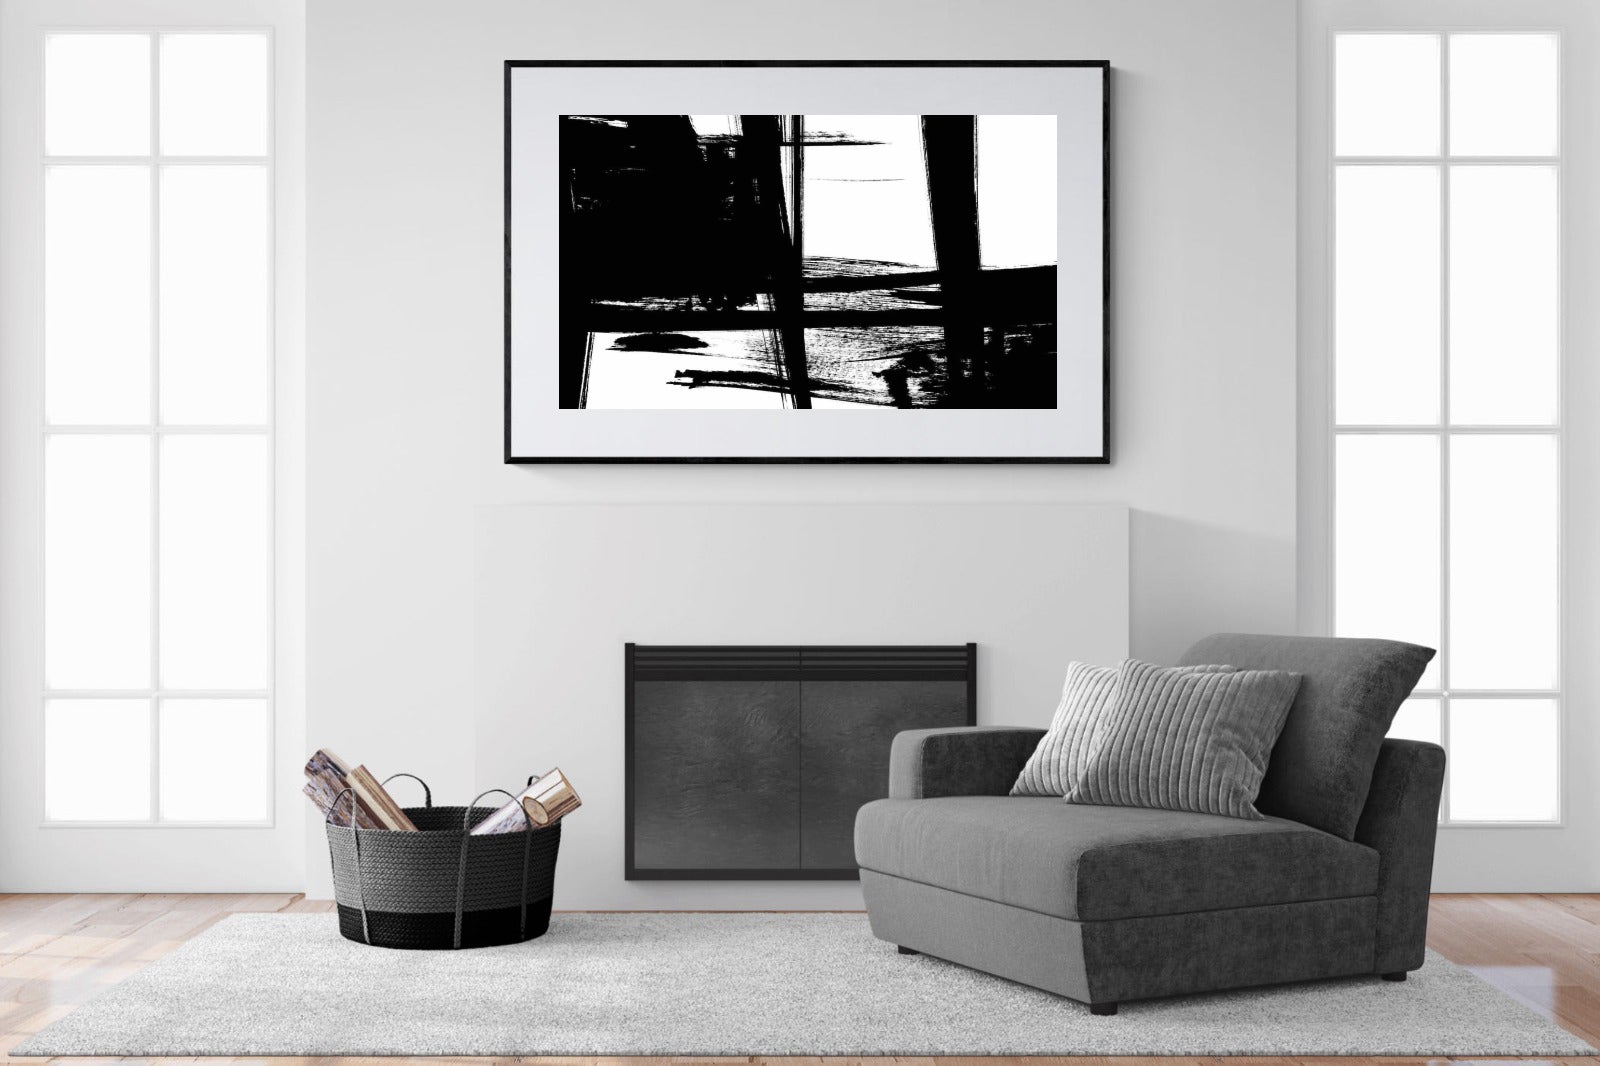 Hijinks-Wall_Art-150 x 100cm-Framed Print-Black-Pixalot